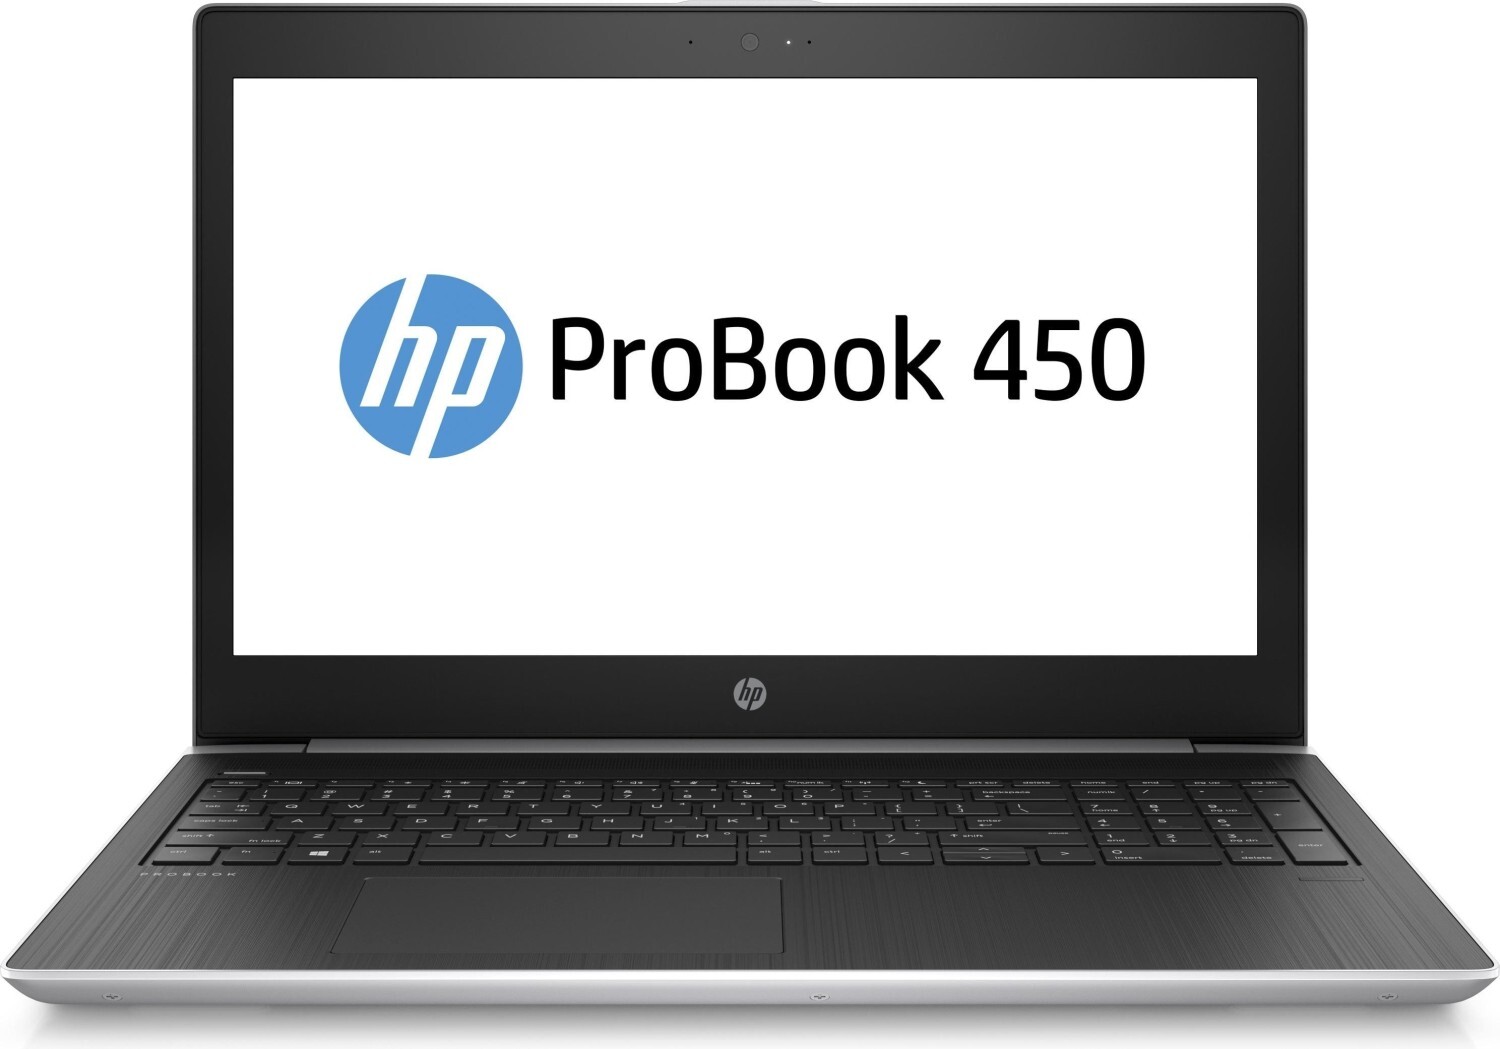 HP ProBook 450 refurbished laptops